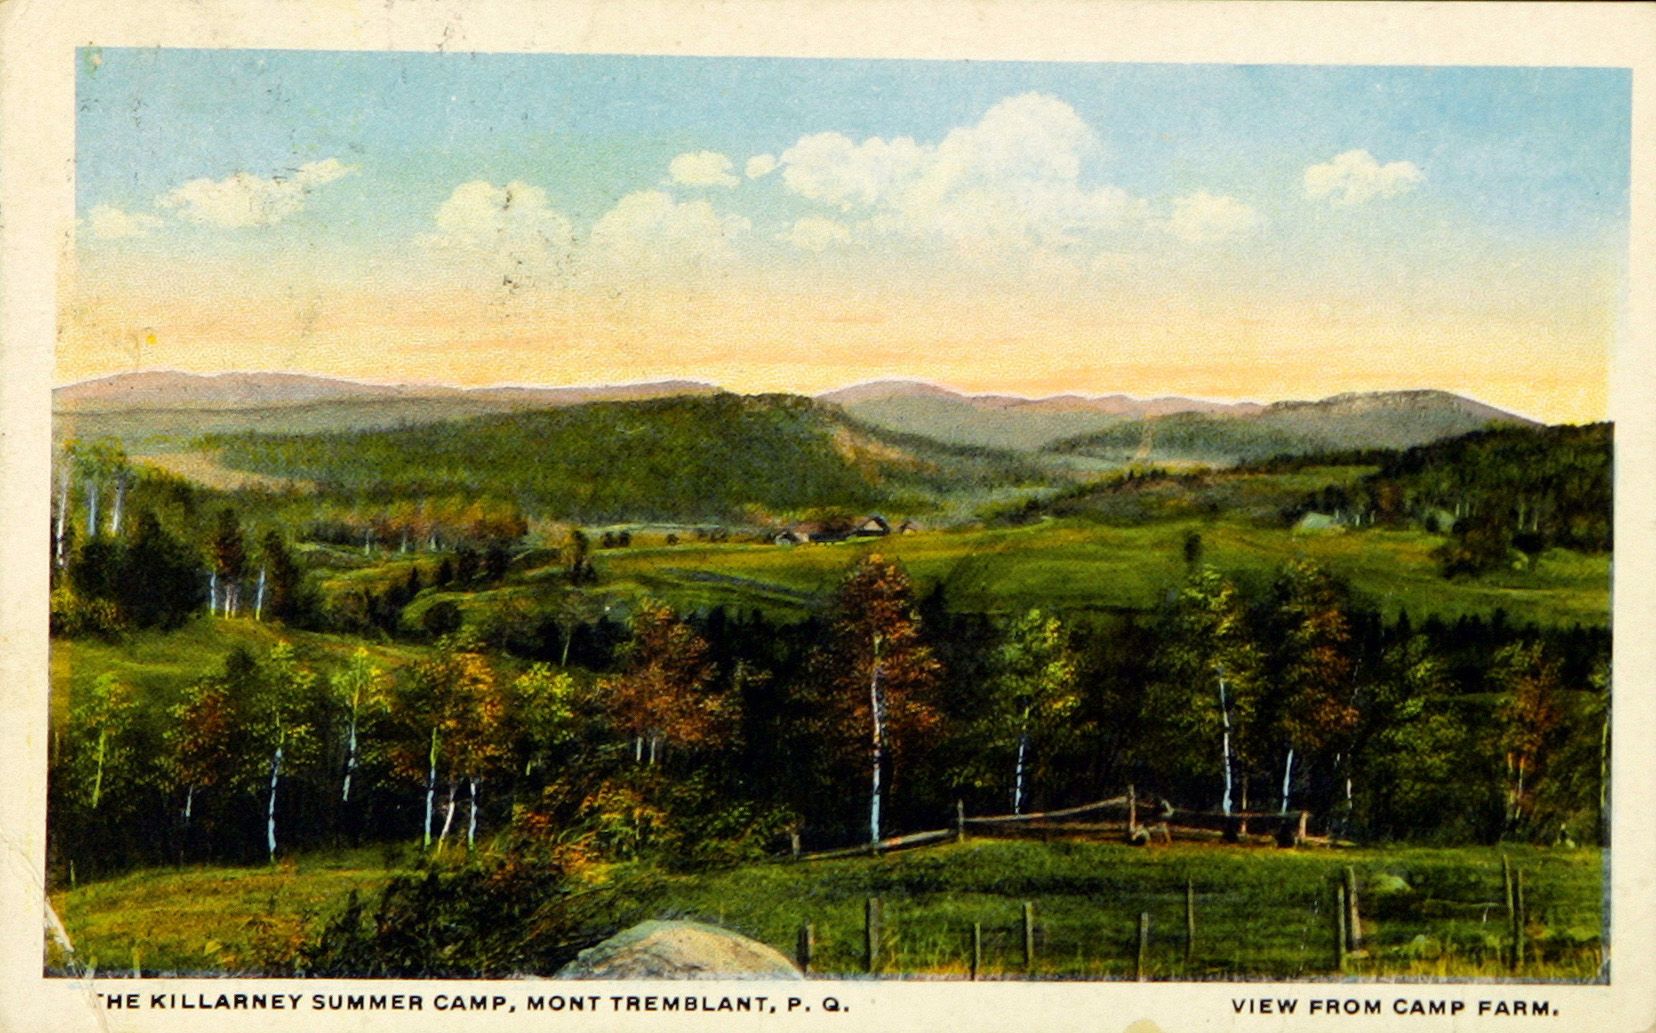 Carte postale illustrant le Mont Tremblant. On aperçoit des arbres et des montagnes à l'horizon